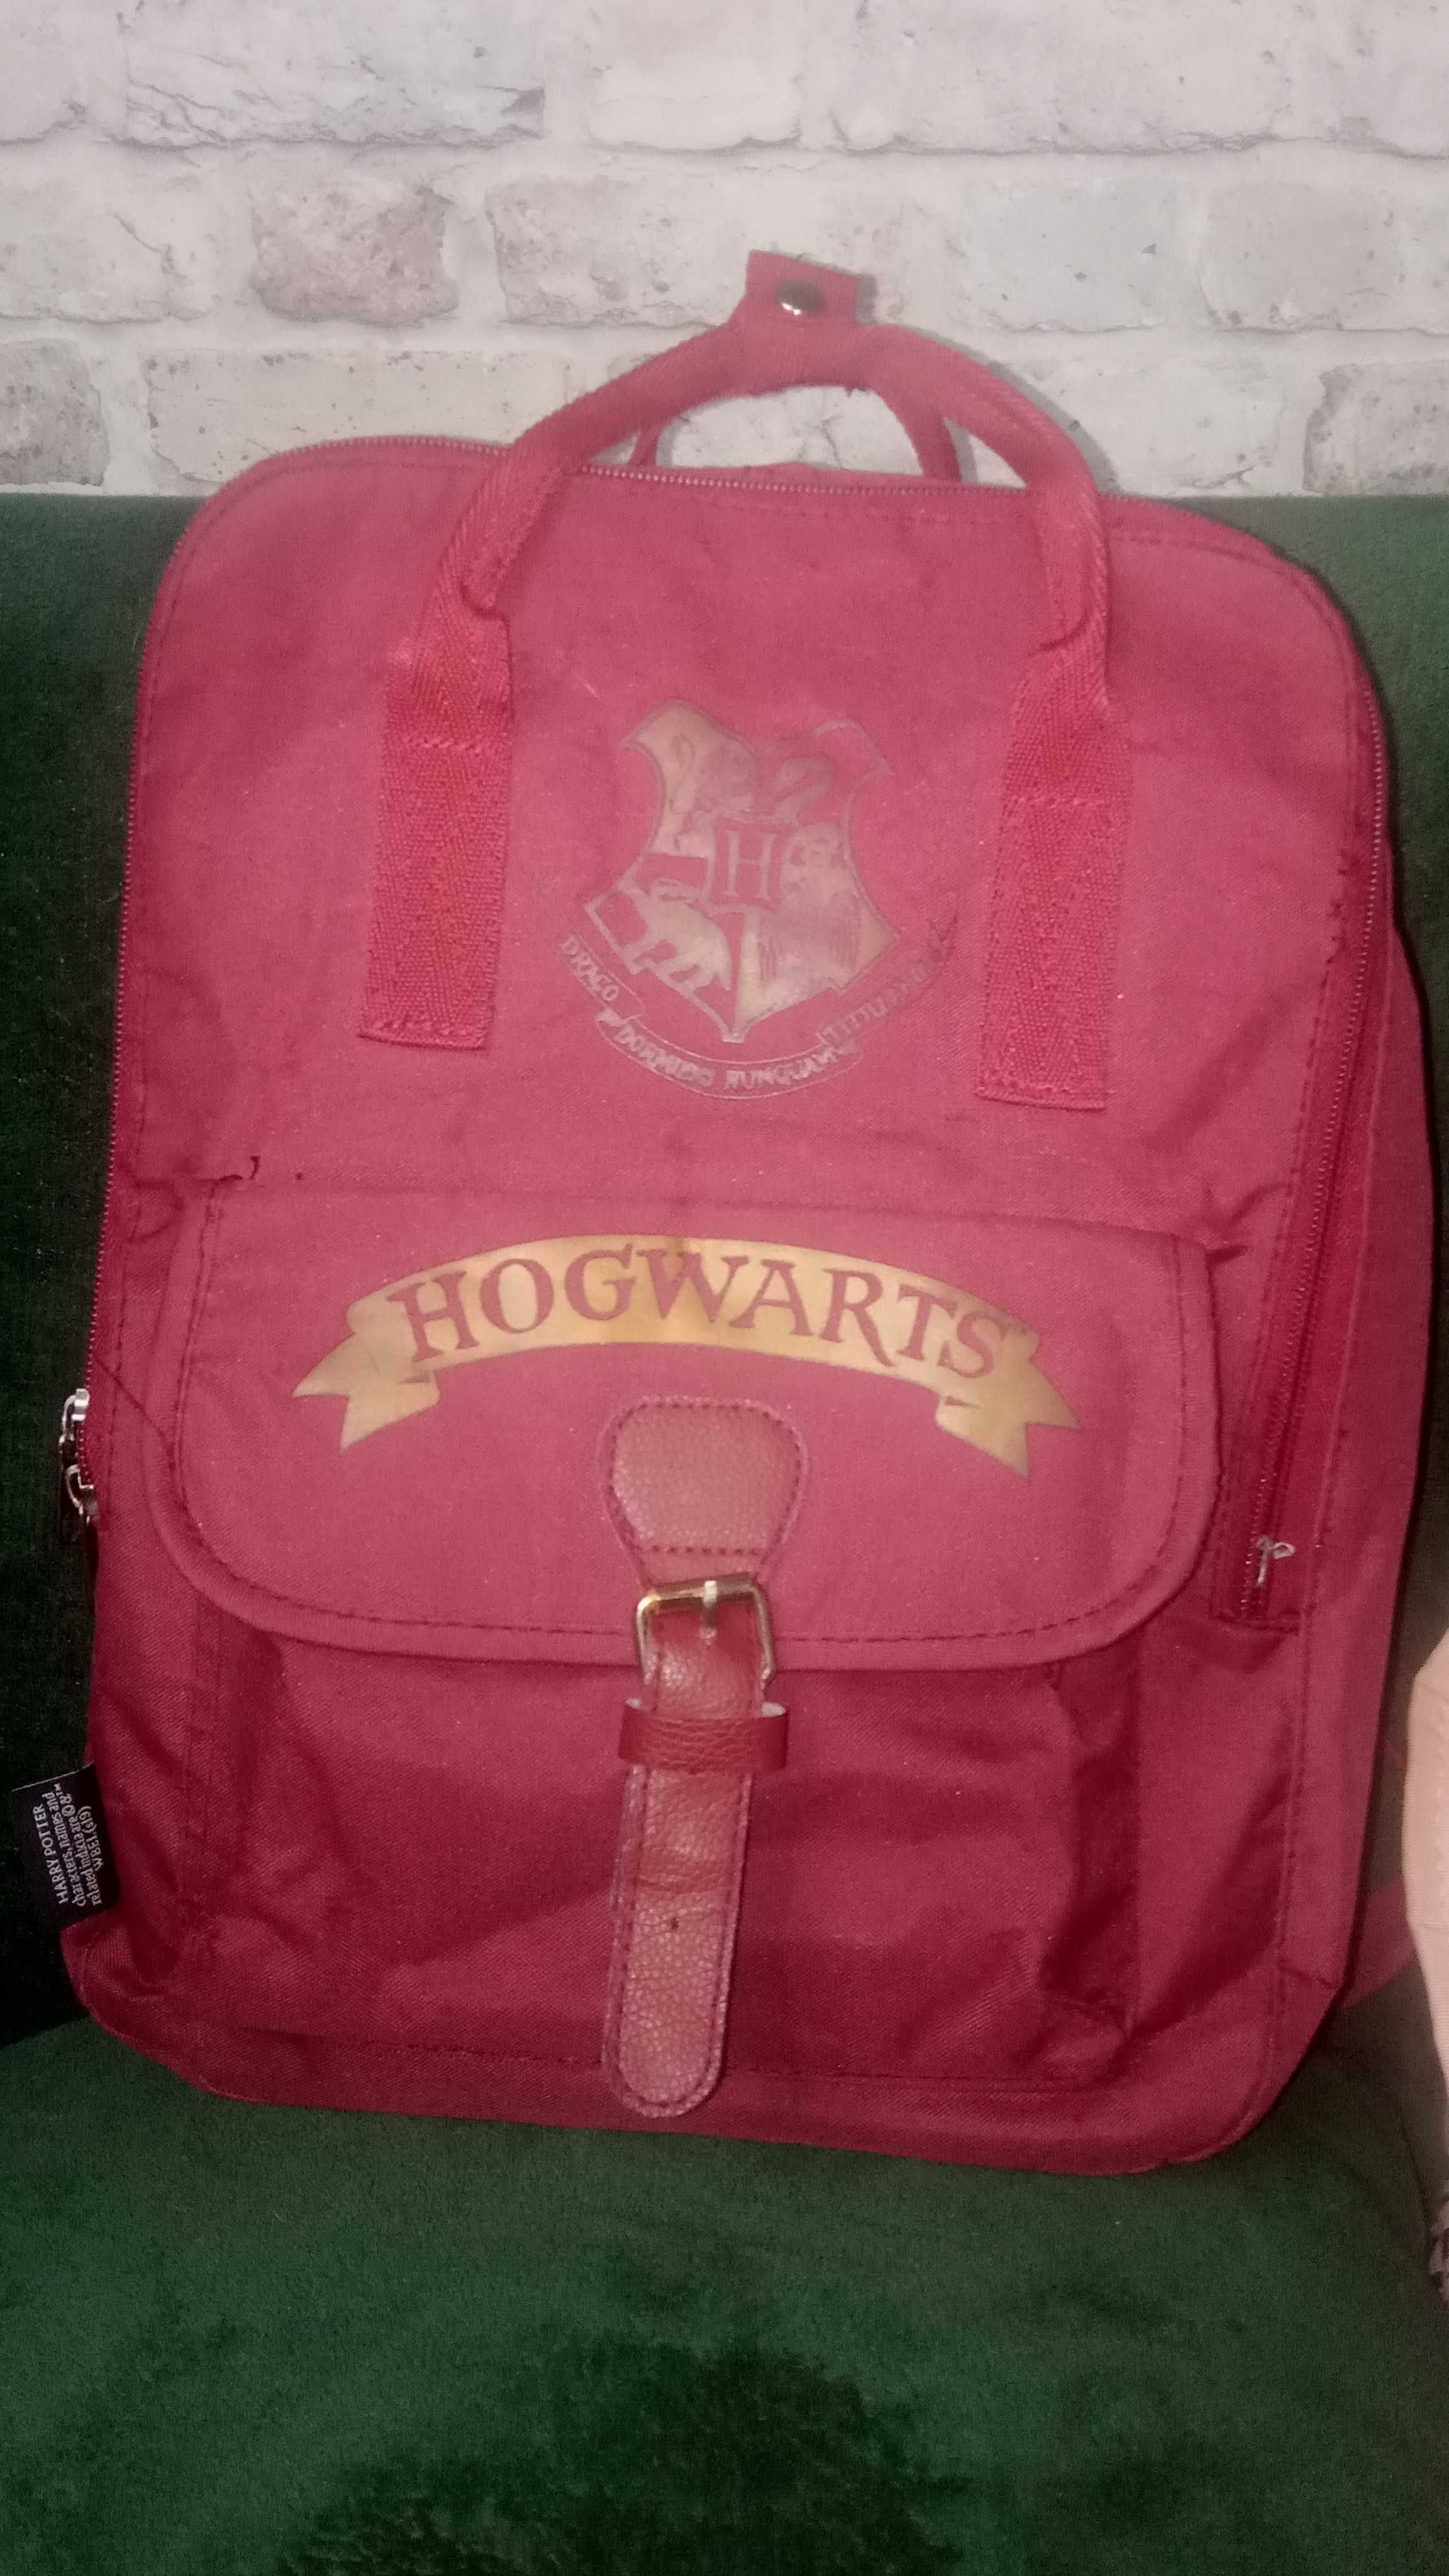 Harry Potter plecak,torba wygodny na plecy i do ręki na wycieczki itp